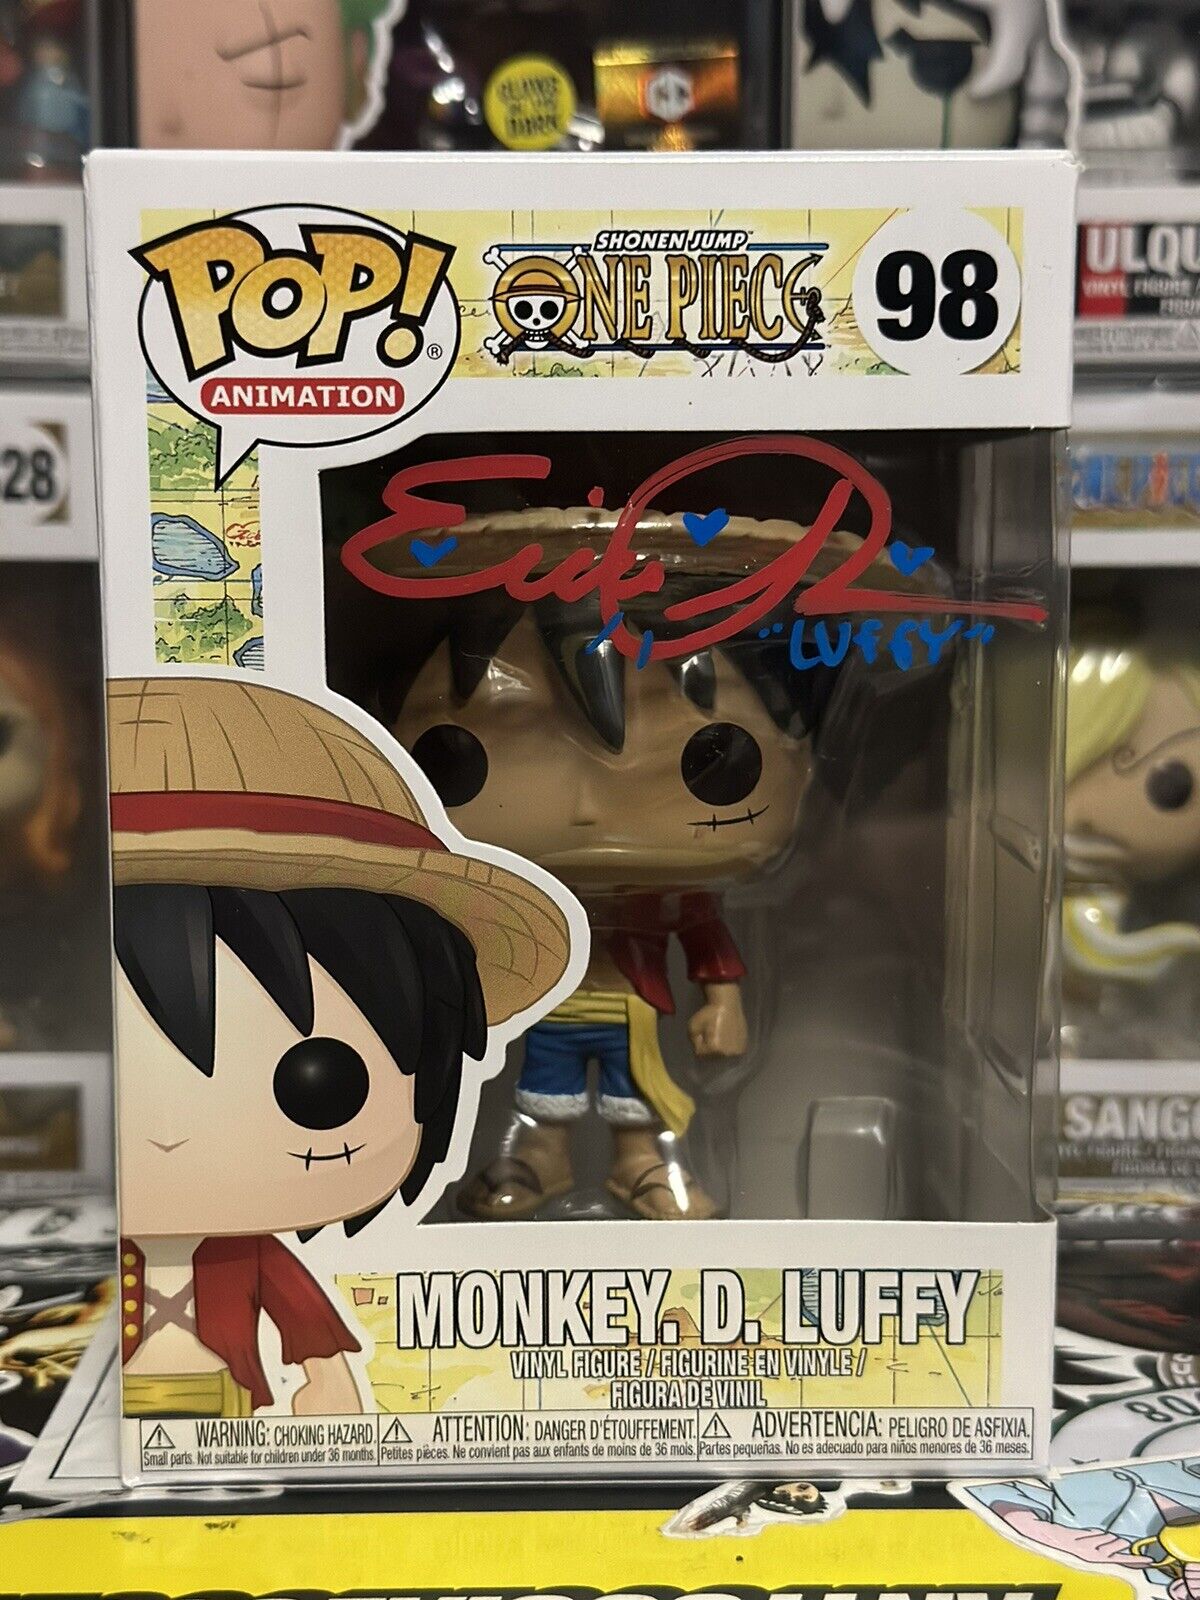 Funko Pop One Piece #98 Monkey. D. Luffy Signed Erica Schroeder PSA Certified